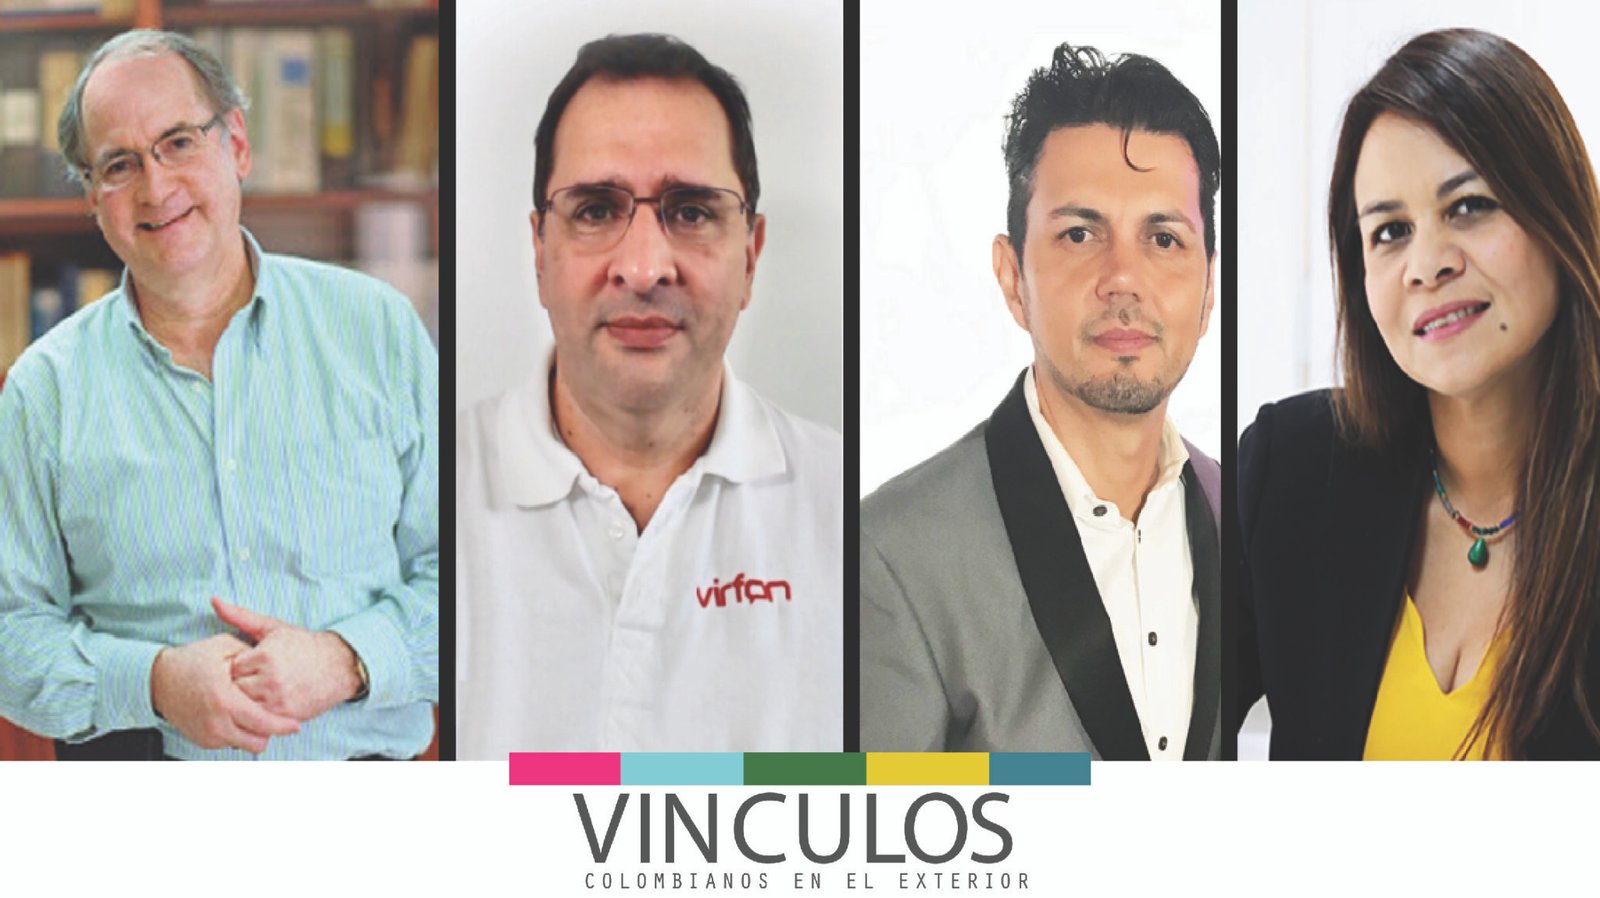 Featured image for “Desafíos empresariales durante la crisis …Cuatro líderes colombianos nos cuentan su experiencia.”